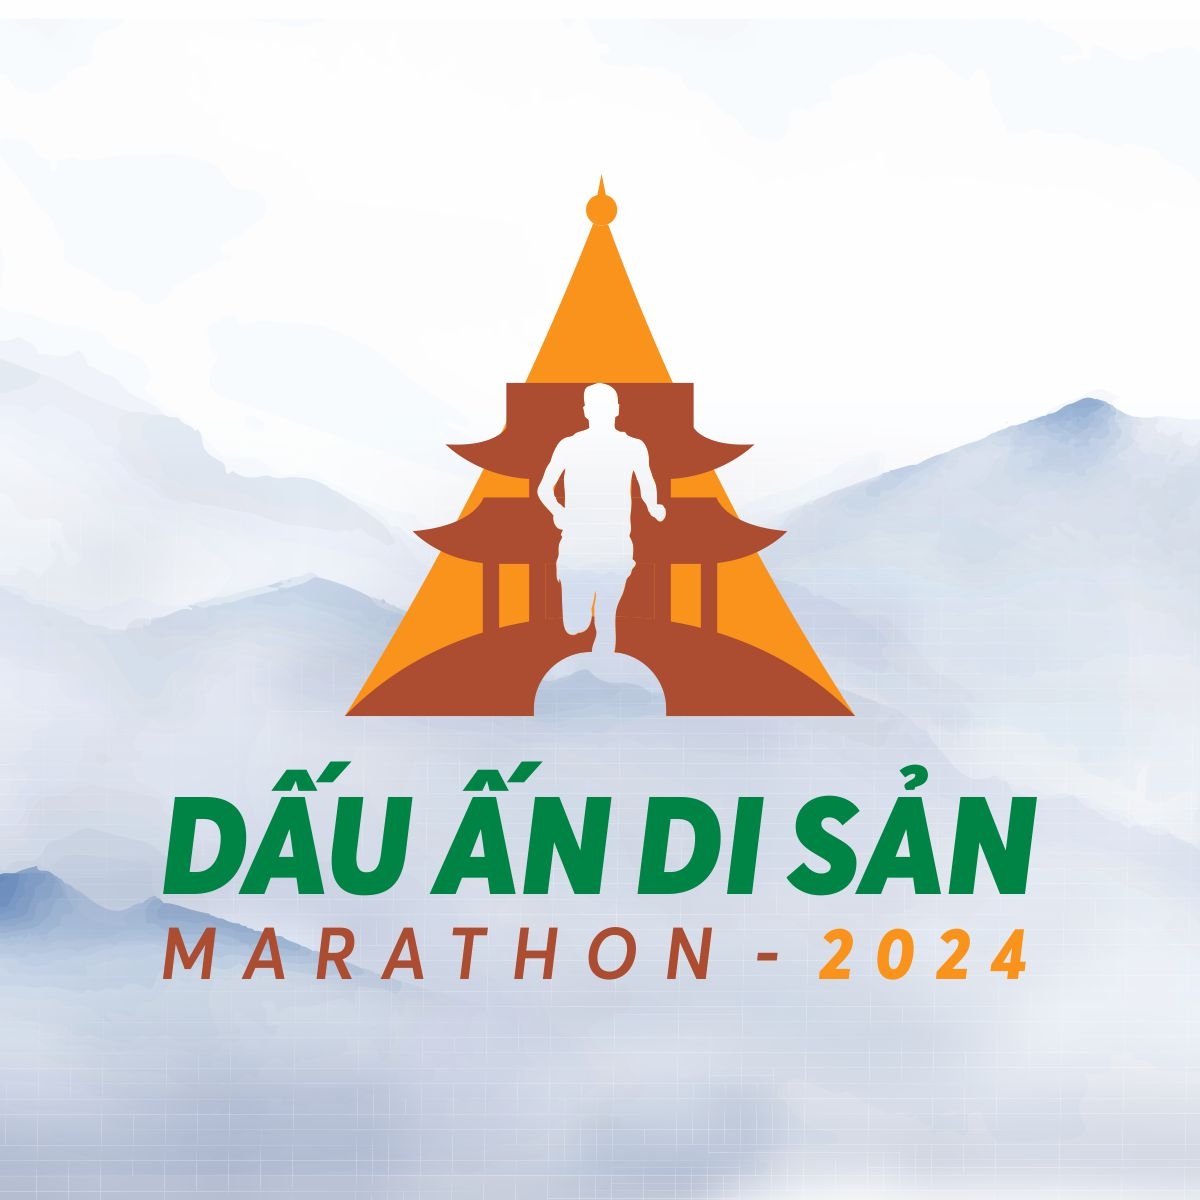 GOYA lan tỏa nguồn năng lượng nhiệt huyết và tinh thần thể thao trong hành trình chinh phục Dấu Ấn Di Sản Marathon 2024